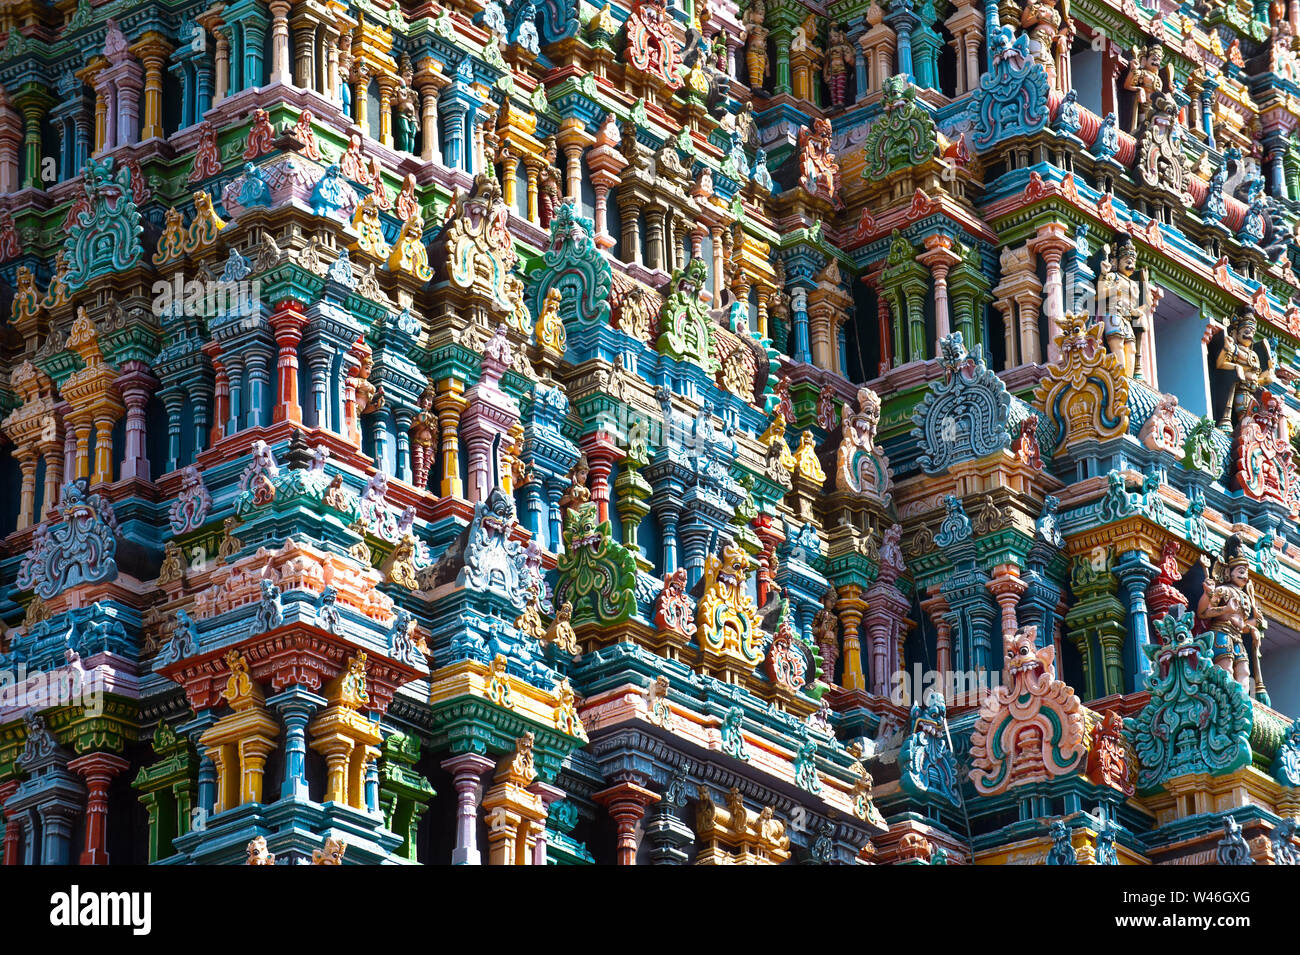 Große Indische Architektur und religiösen Kunst Götter pantheon an Tempel Gopuram (Turm) Fassade alten farbenfrohen Statuen des Mahabharata Helden Südindien Stockfoto